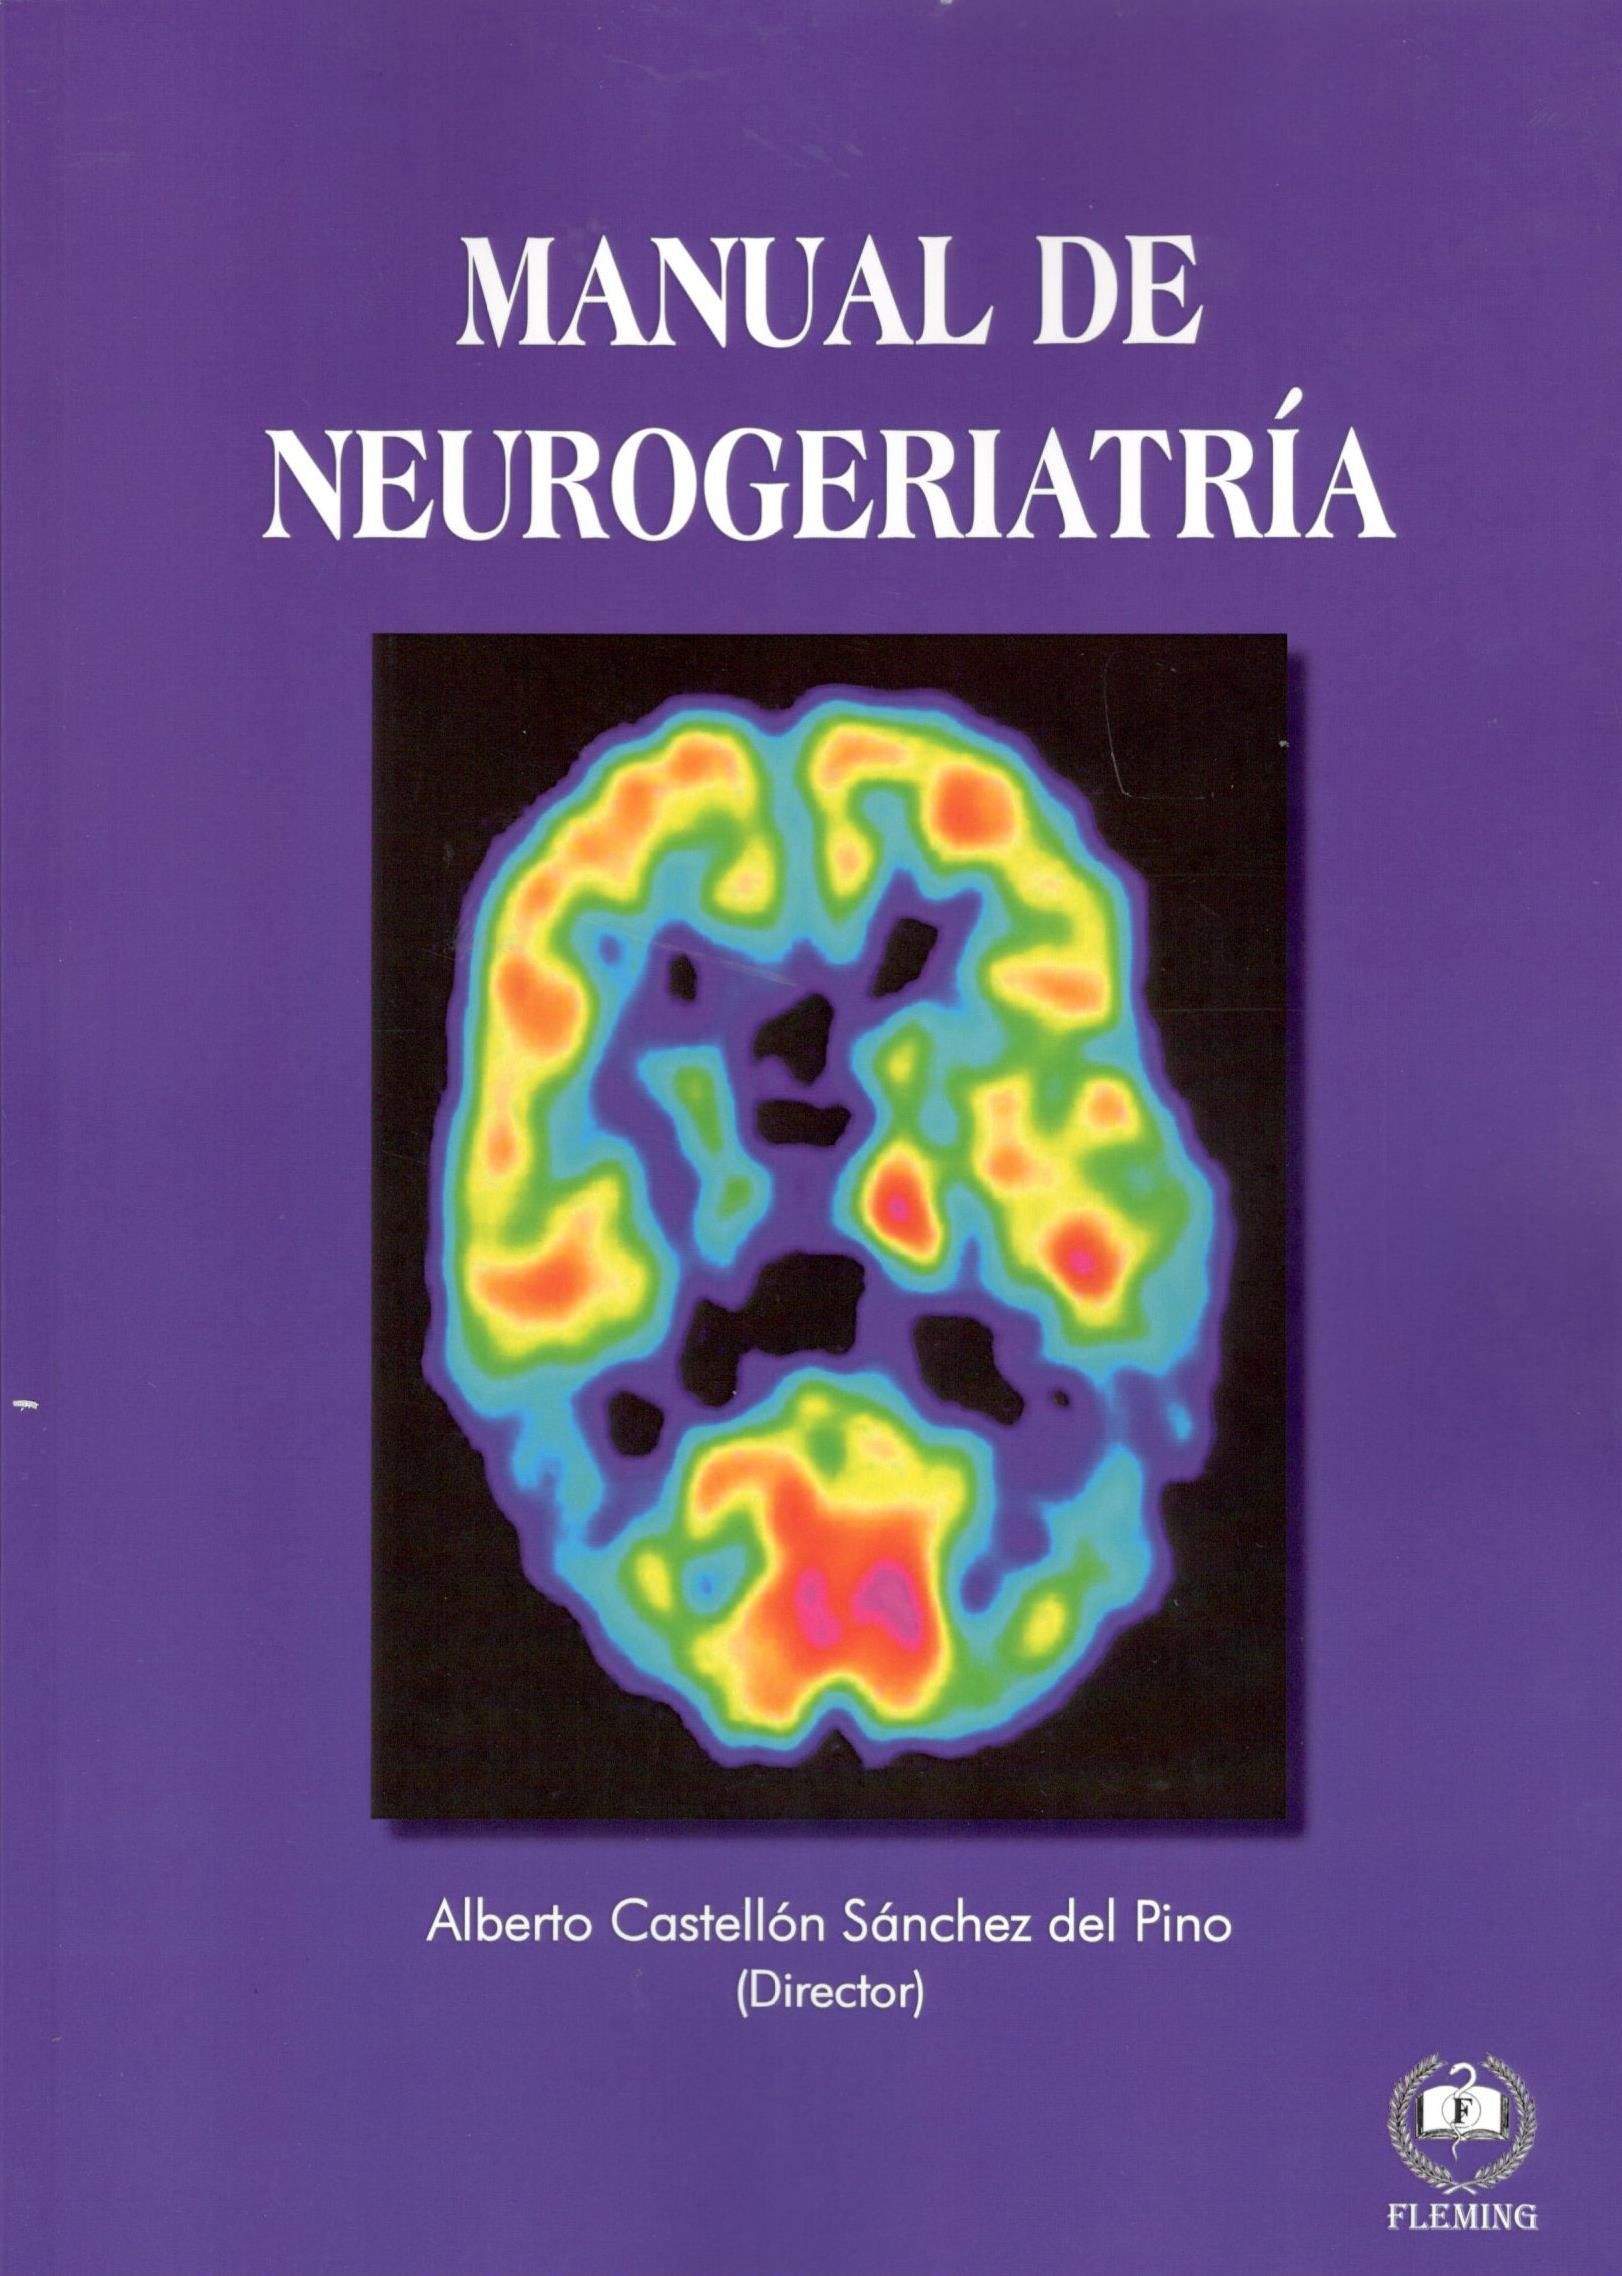 Imagen de portada del libro Manual de neurogeriatría